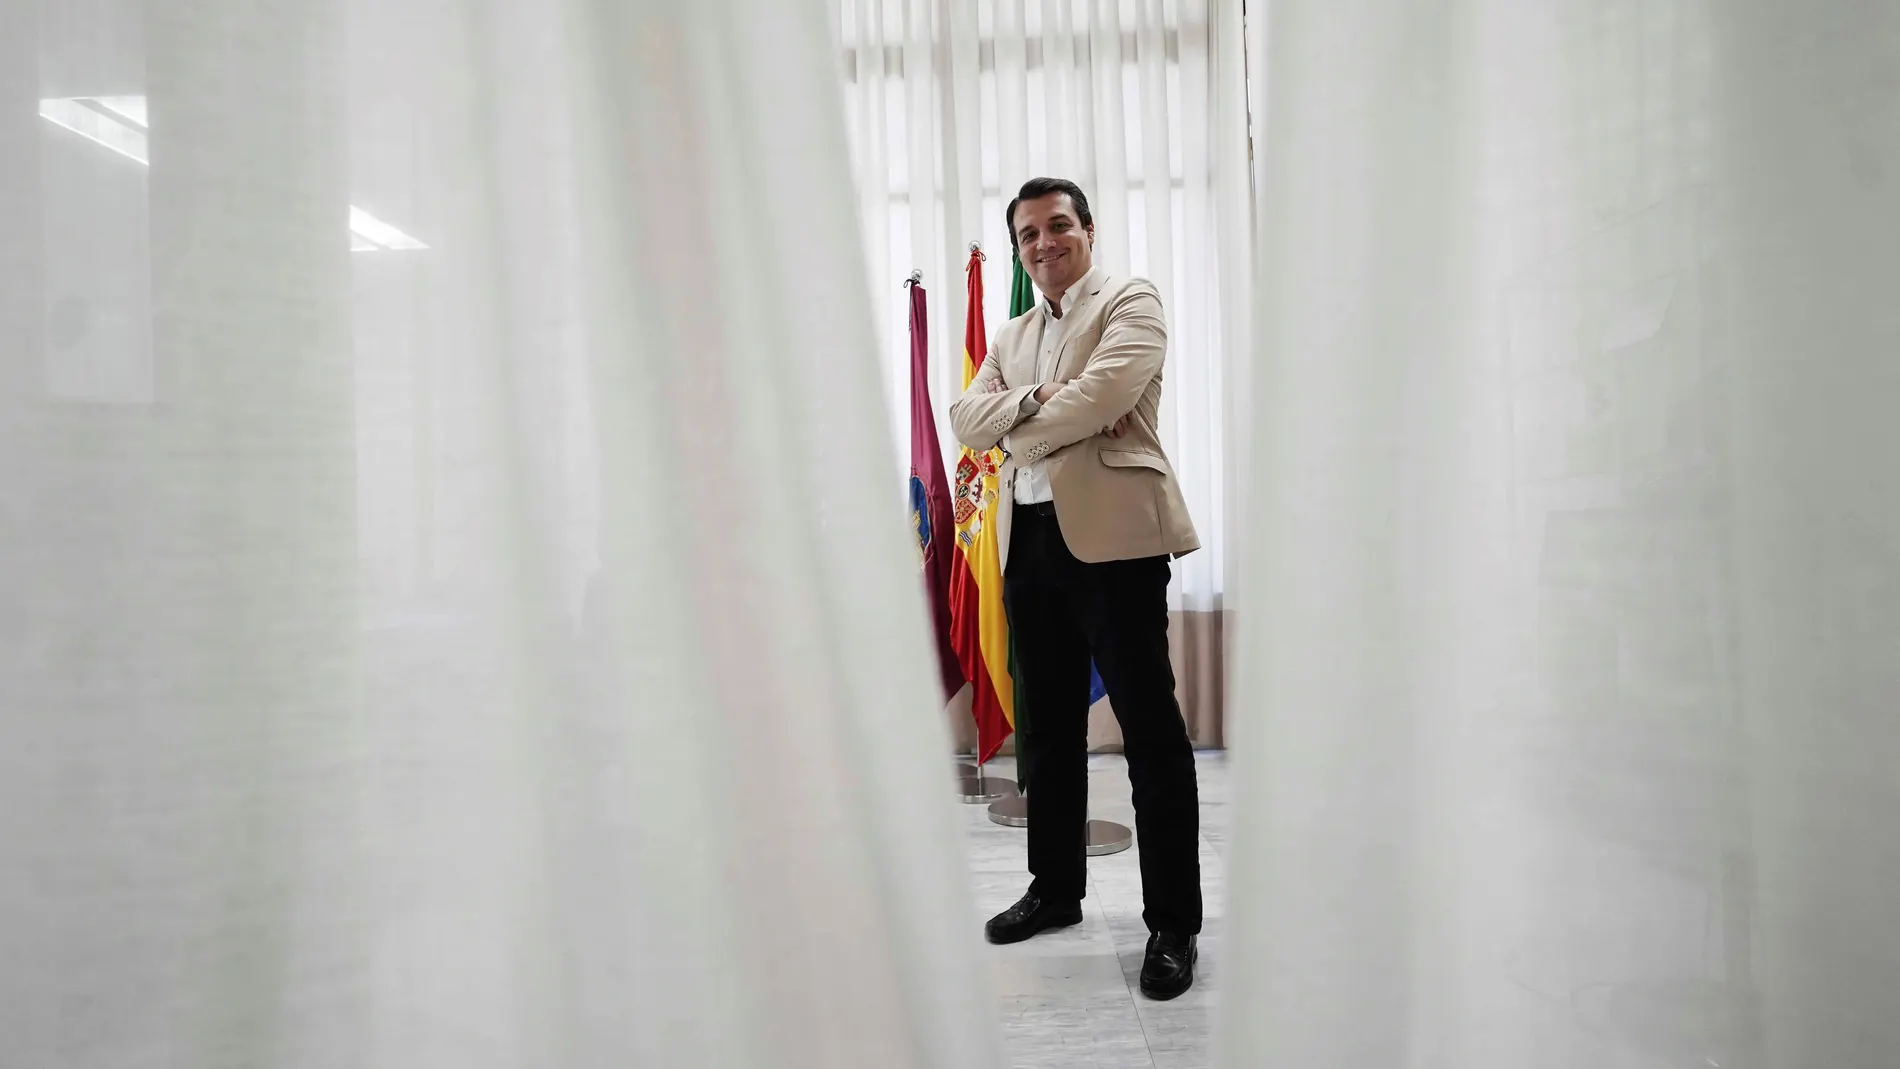 Alcalde de Córdoba: "Si quiebran los ayuntamientos, quiebra el Estado"